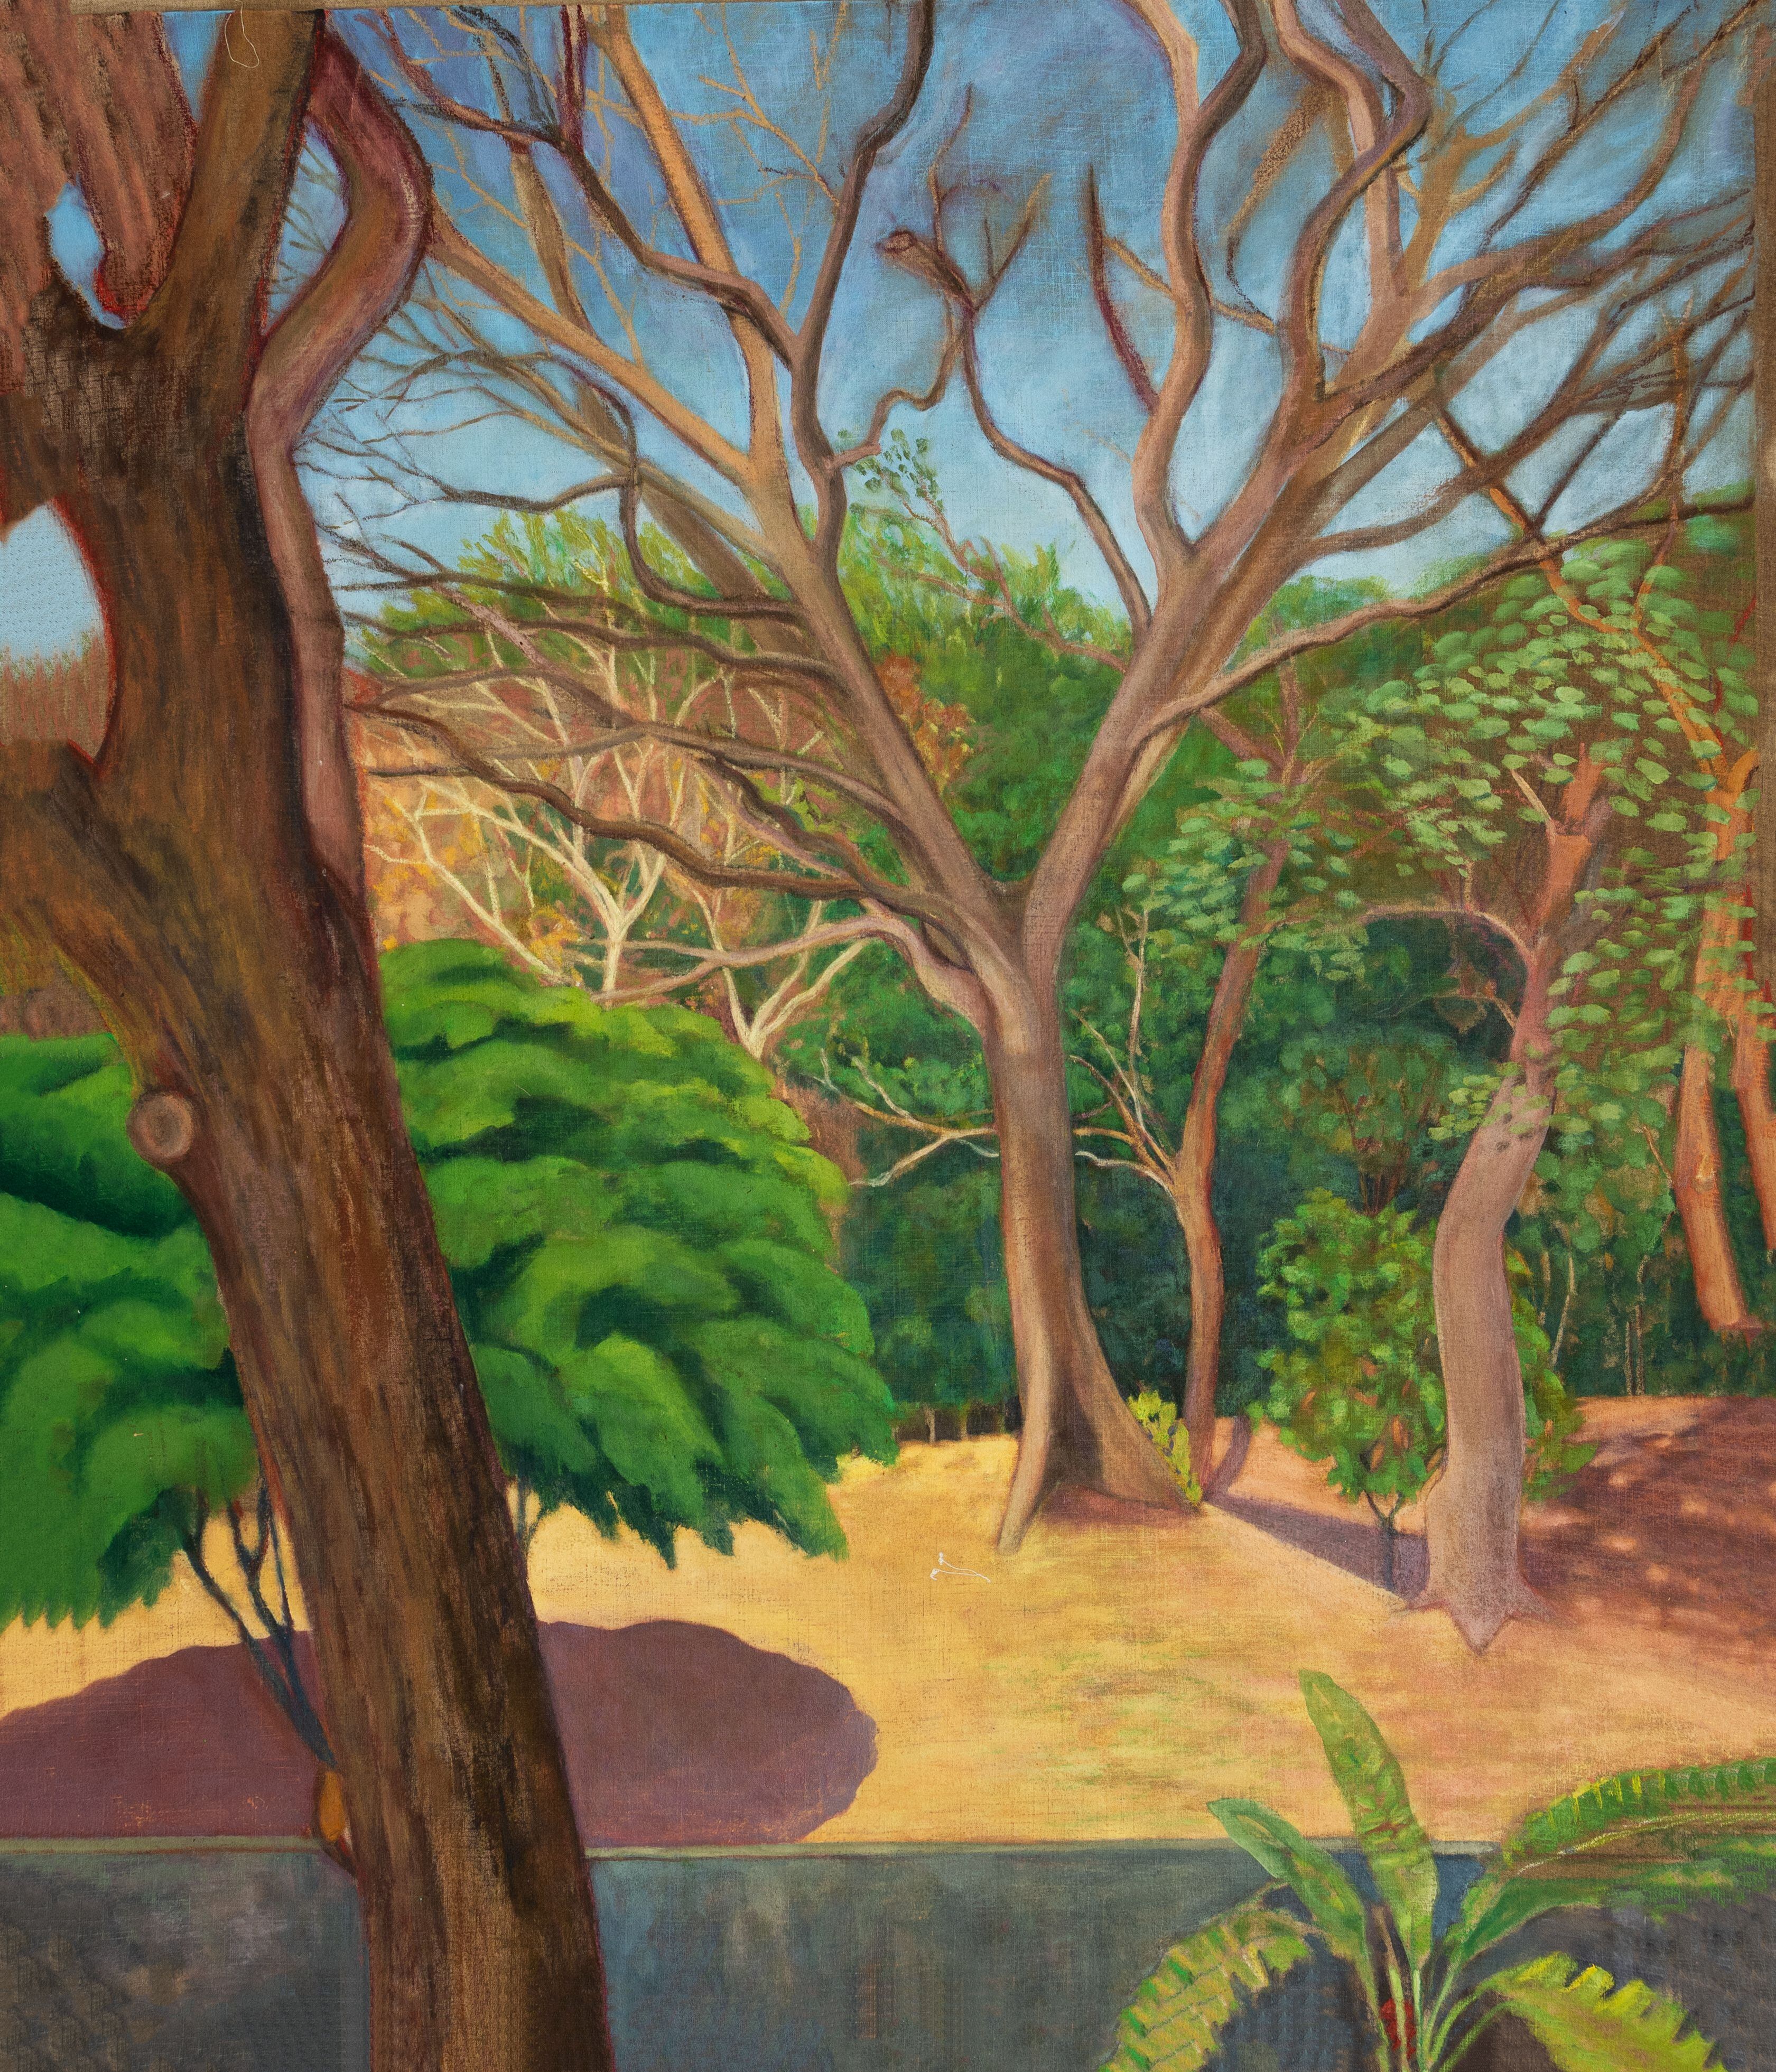 Sagrario Chamorro utiliza paisajes urbanos y escenas íntimas en sus obras para reflejar una sensación de soledad orquestada.